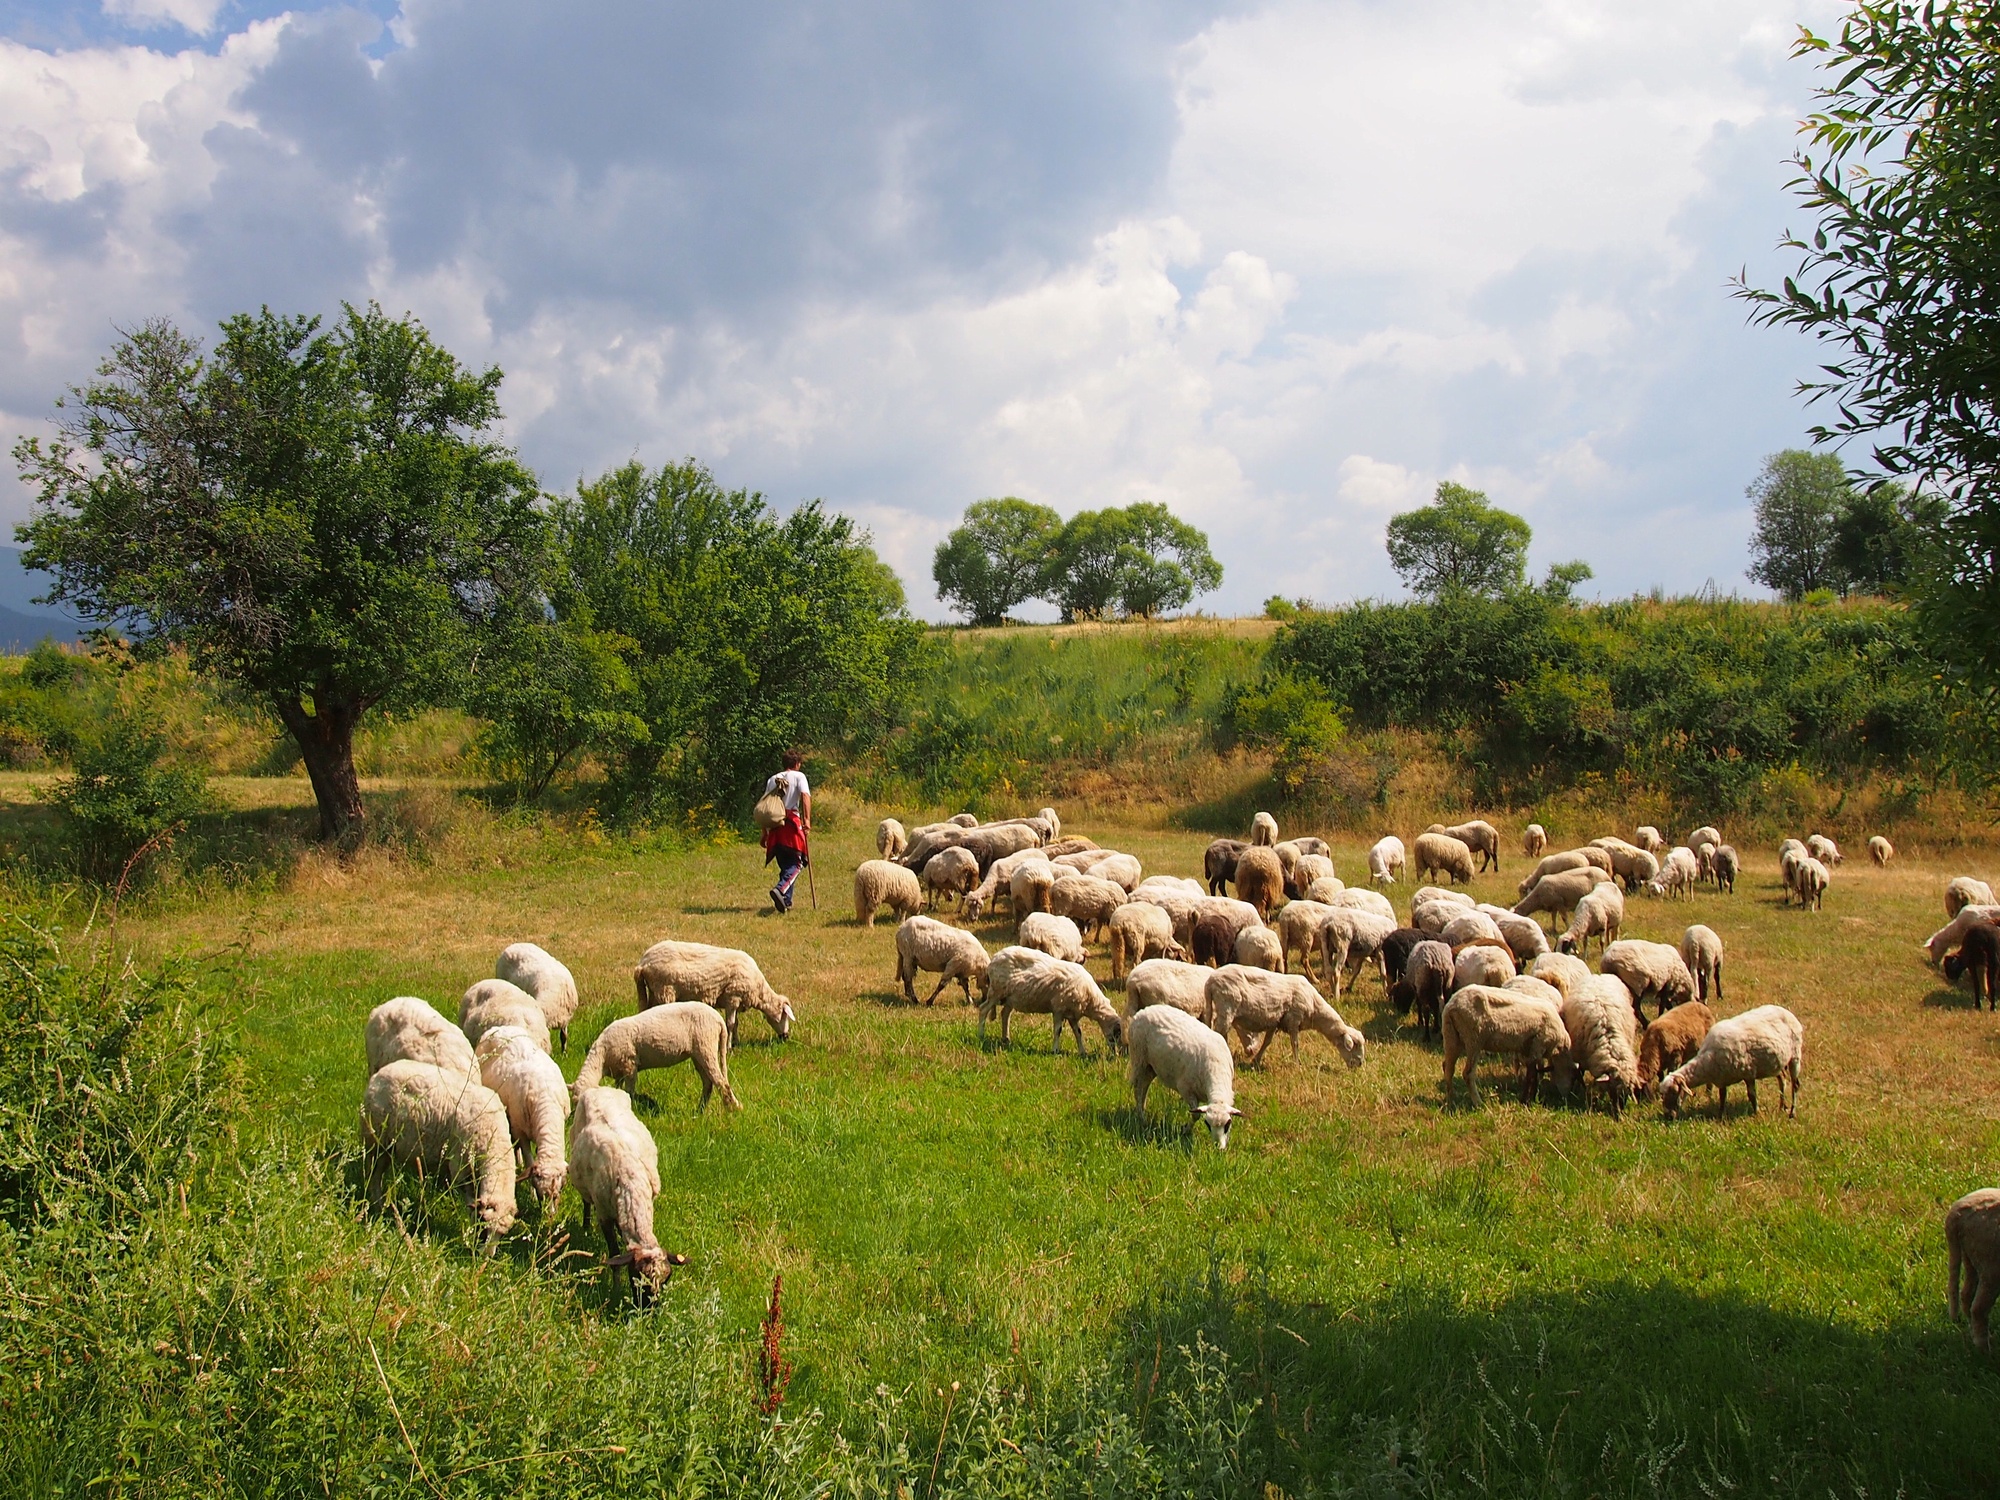 Sheep herding in Bulgaria